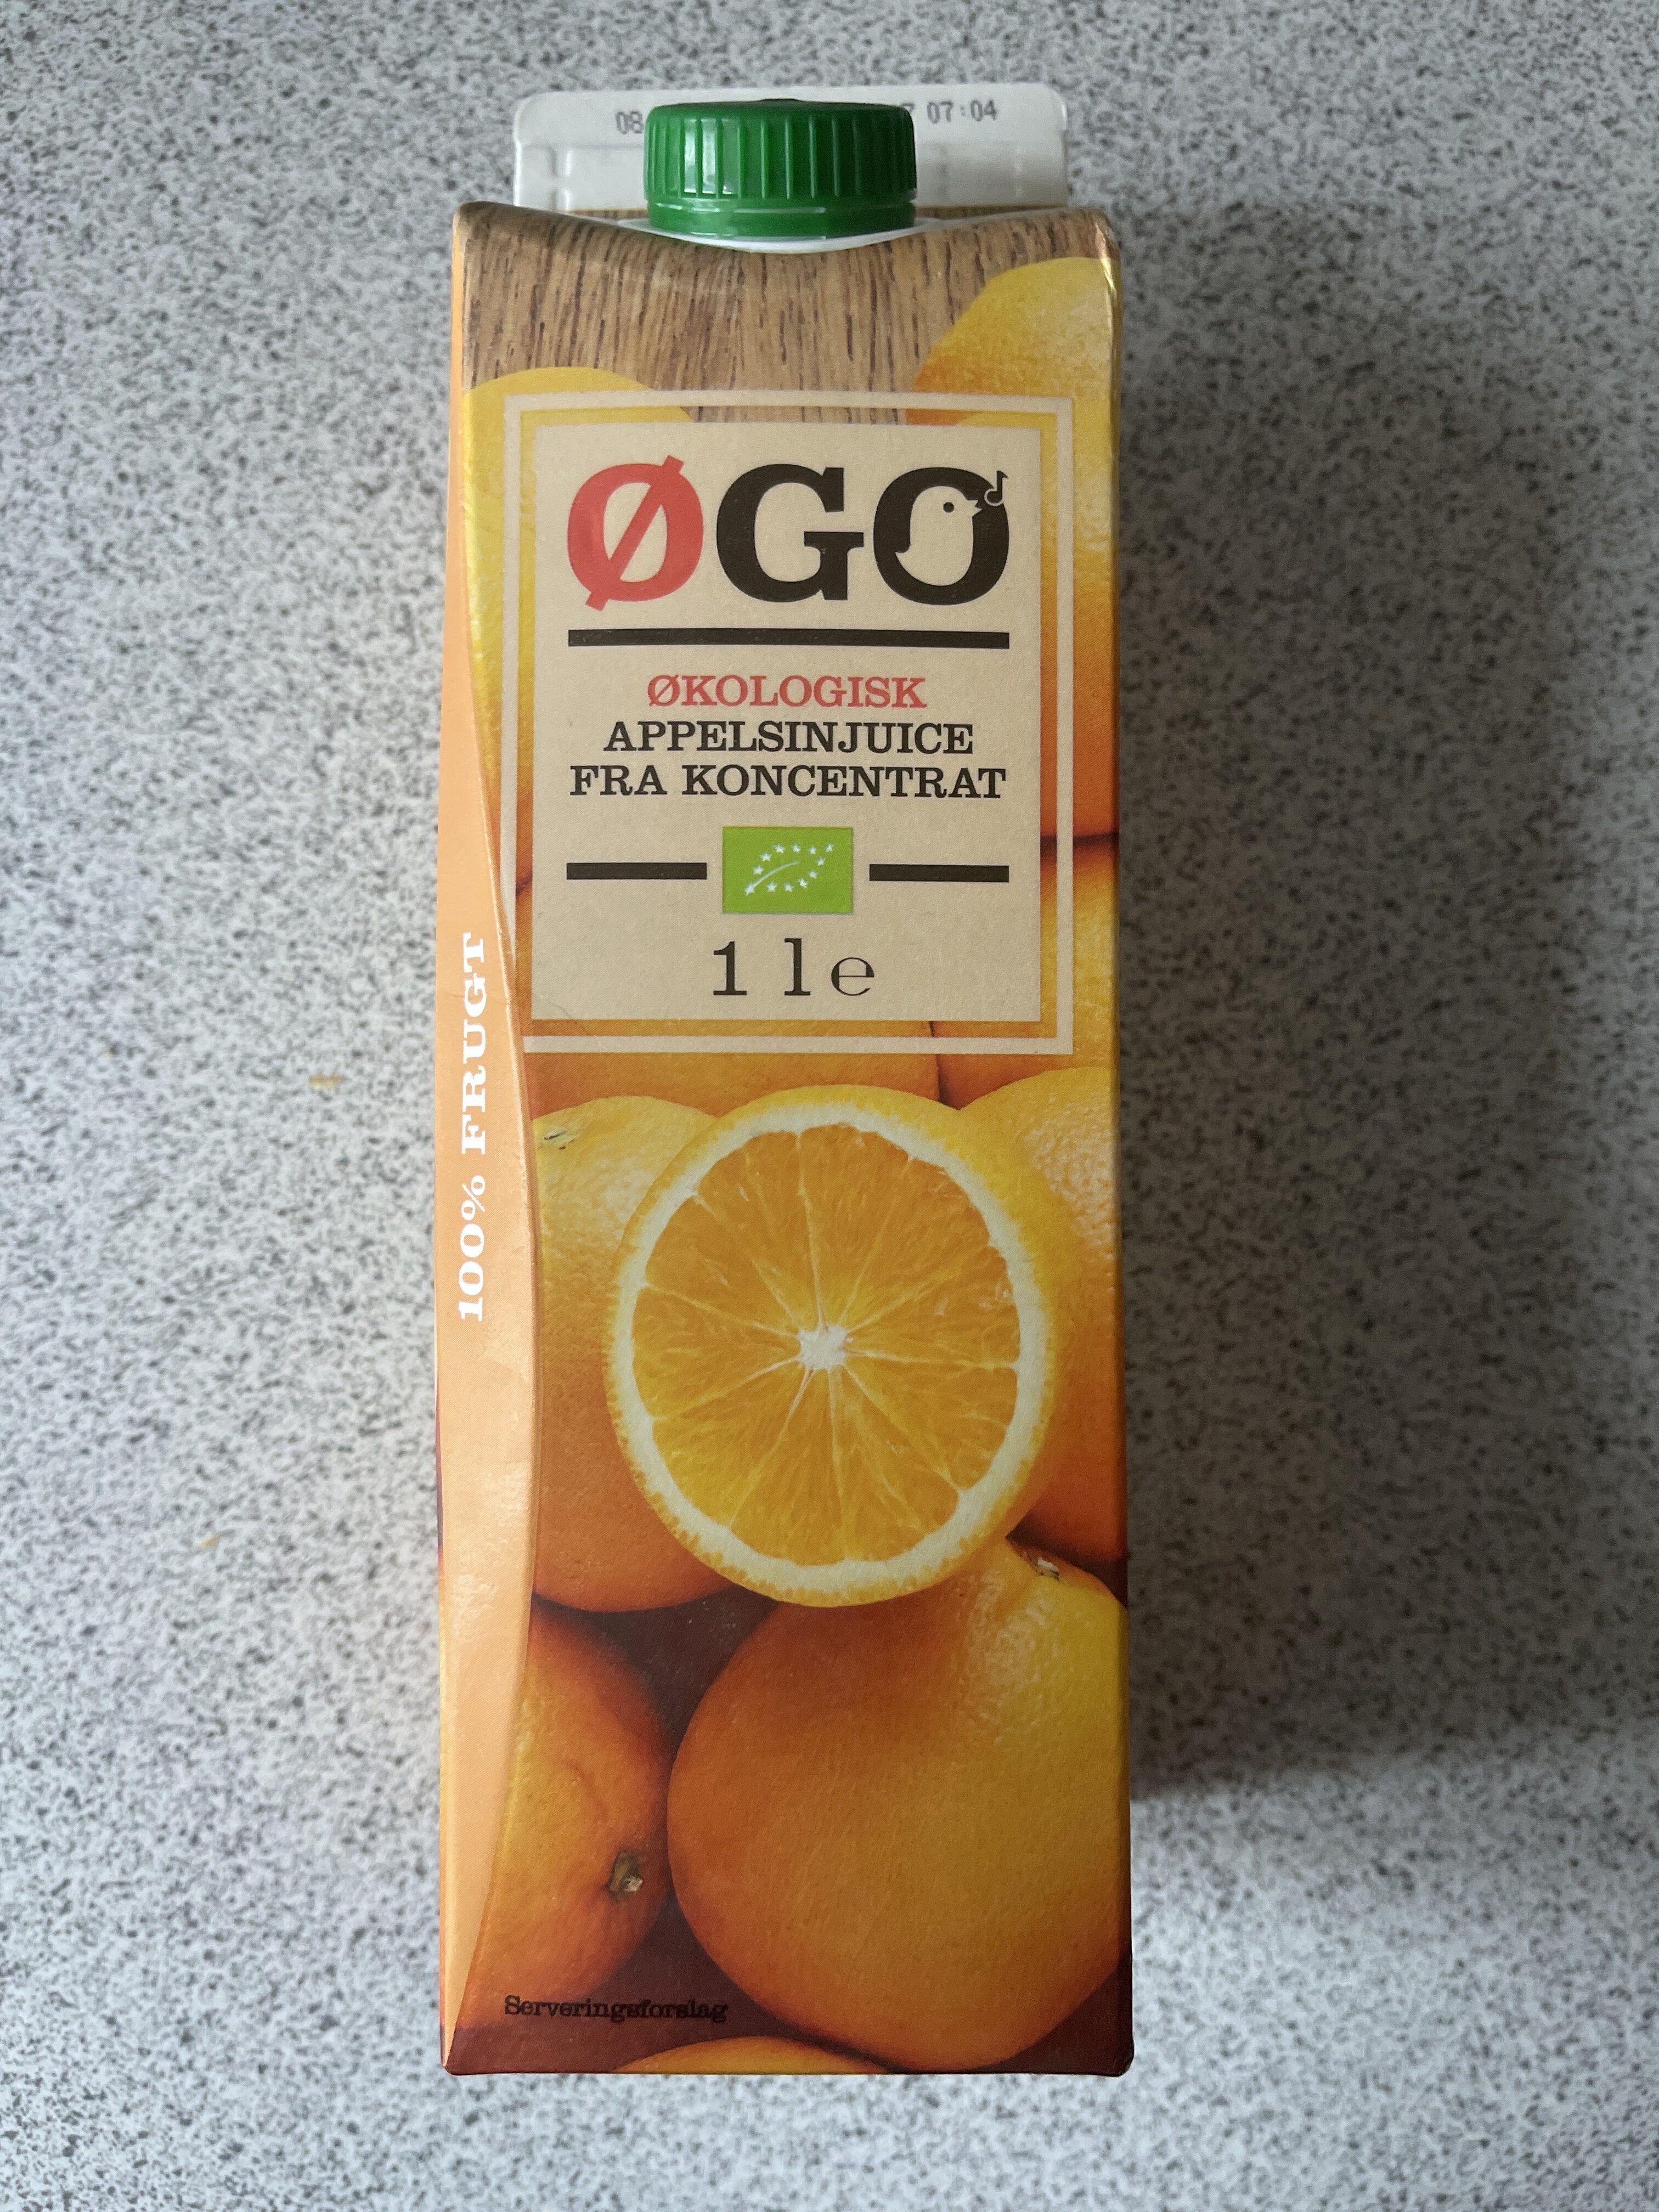 Økologisk Appelsinjuice fra koncentrat - Produkt